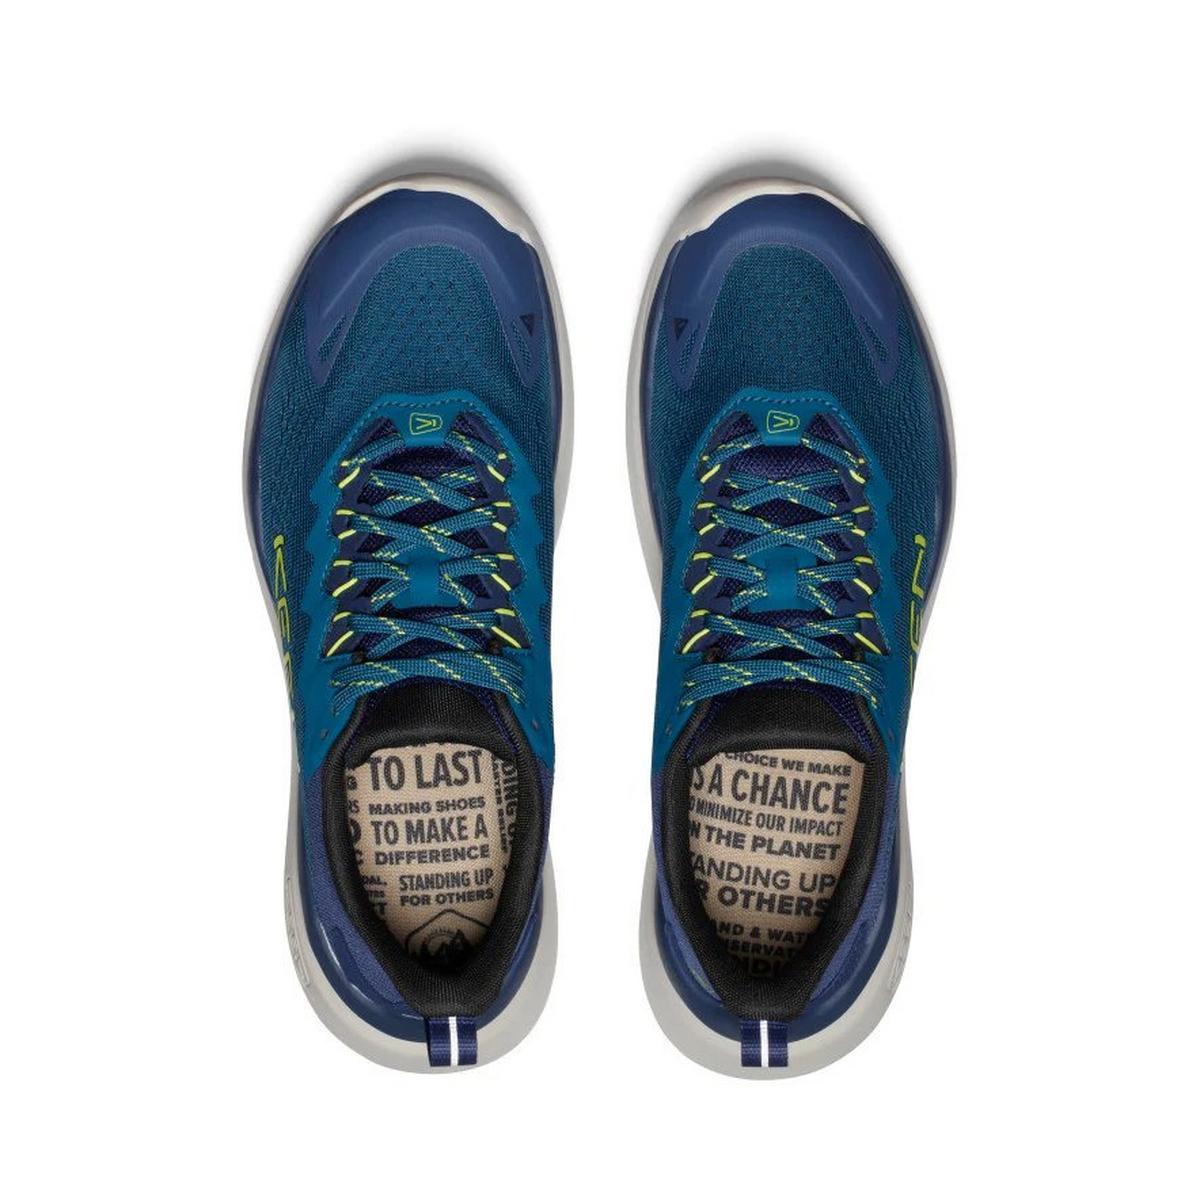 Keen Men's WK450 Walking Shoes - Blue